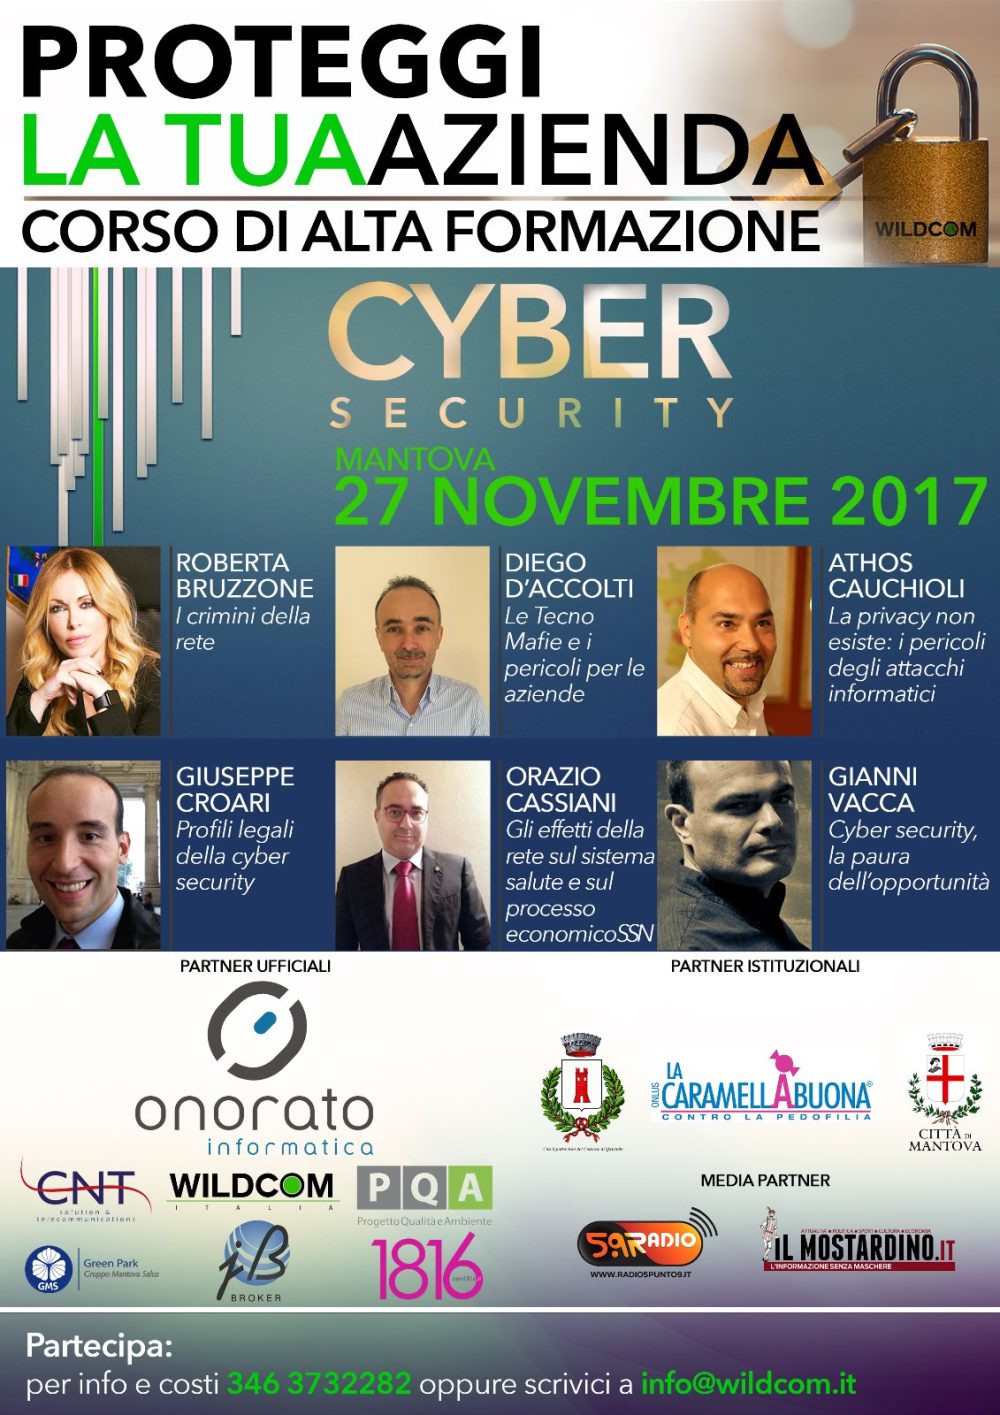 Wildcom Italia presente all’evento “Cybersecurity in azienda”